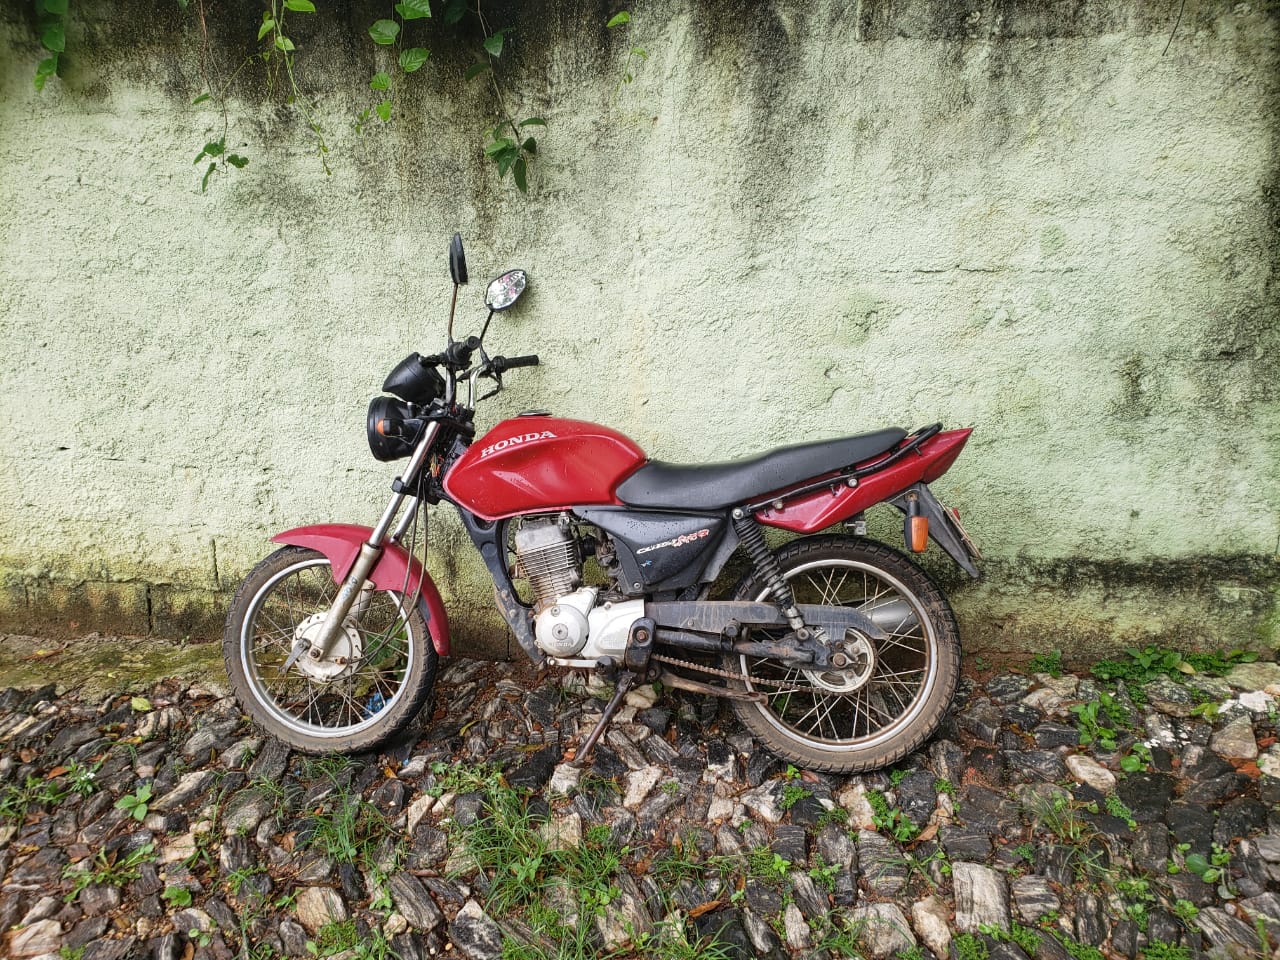 Motocicleta furtada no Clélia Bernardes é localizada em bairro vizinho